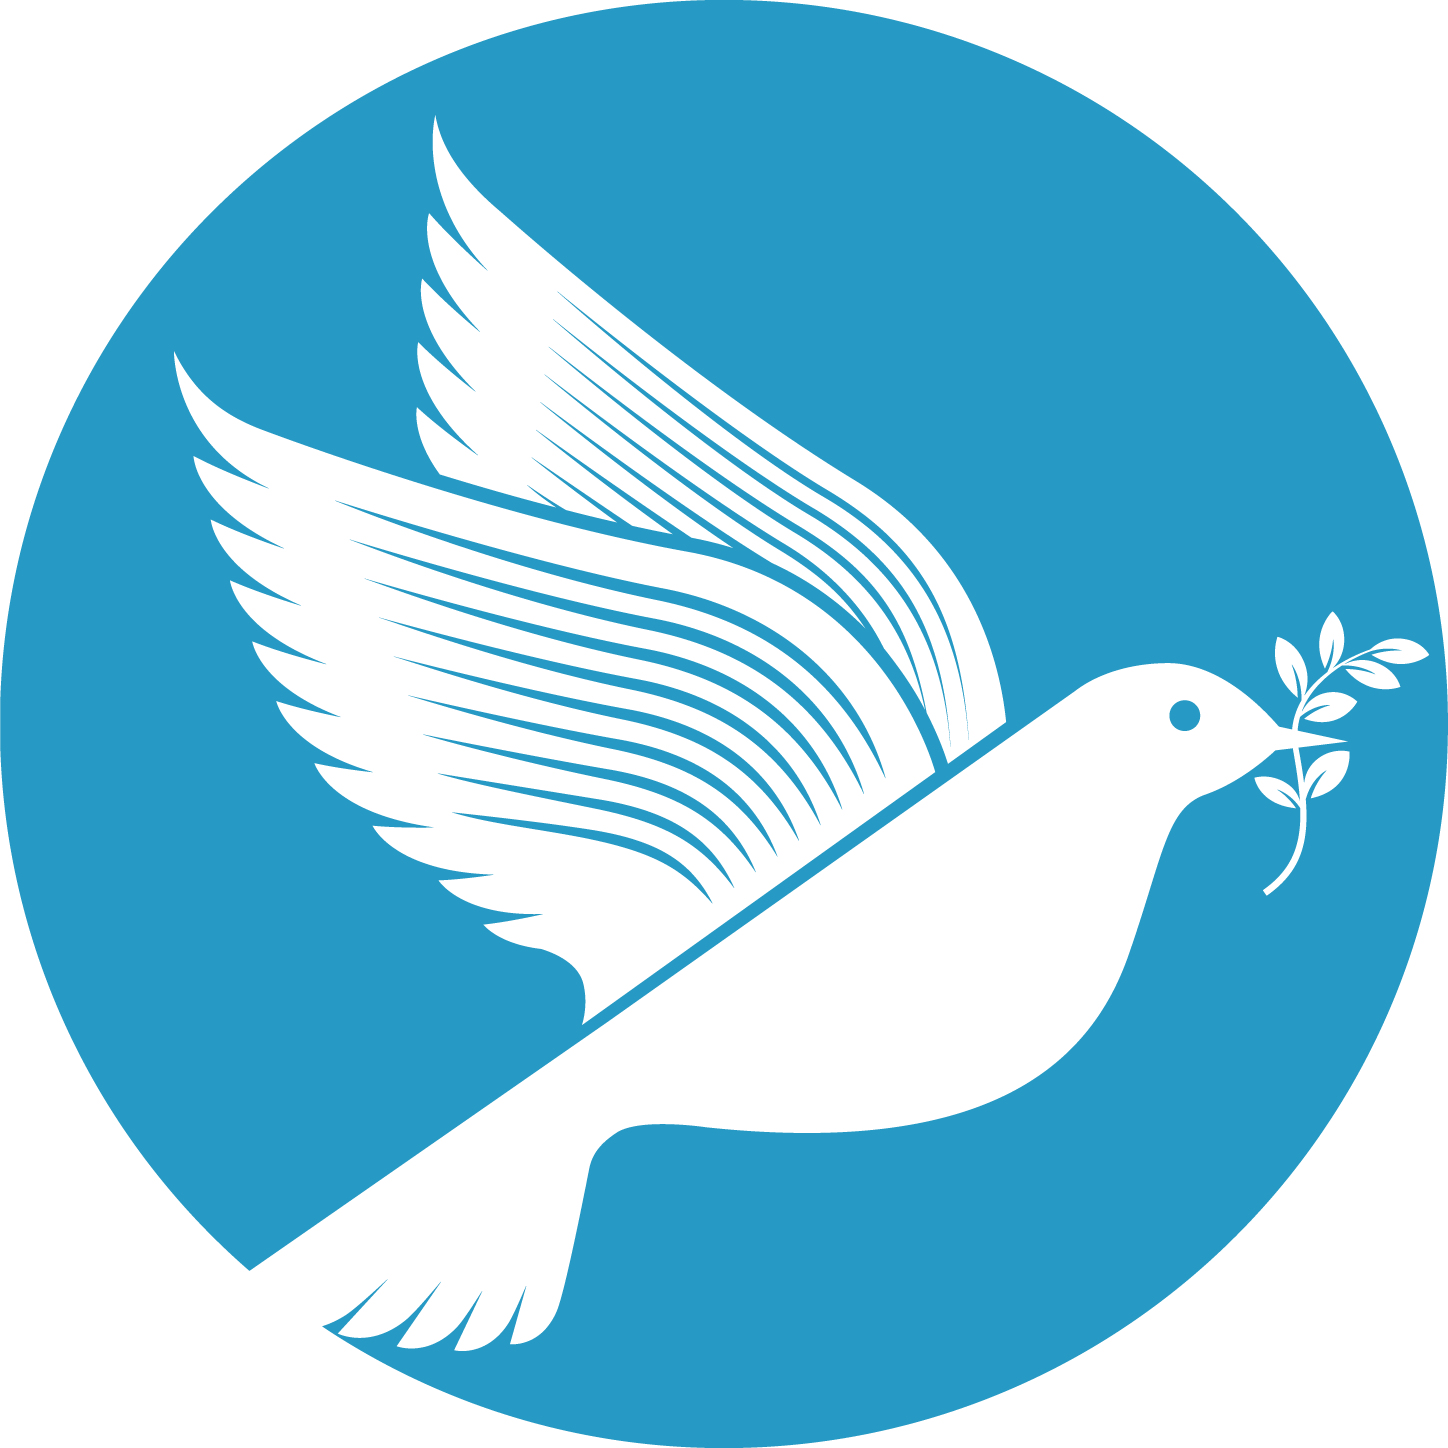 Stiftung Friedensfoerderung